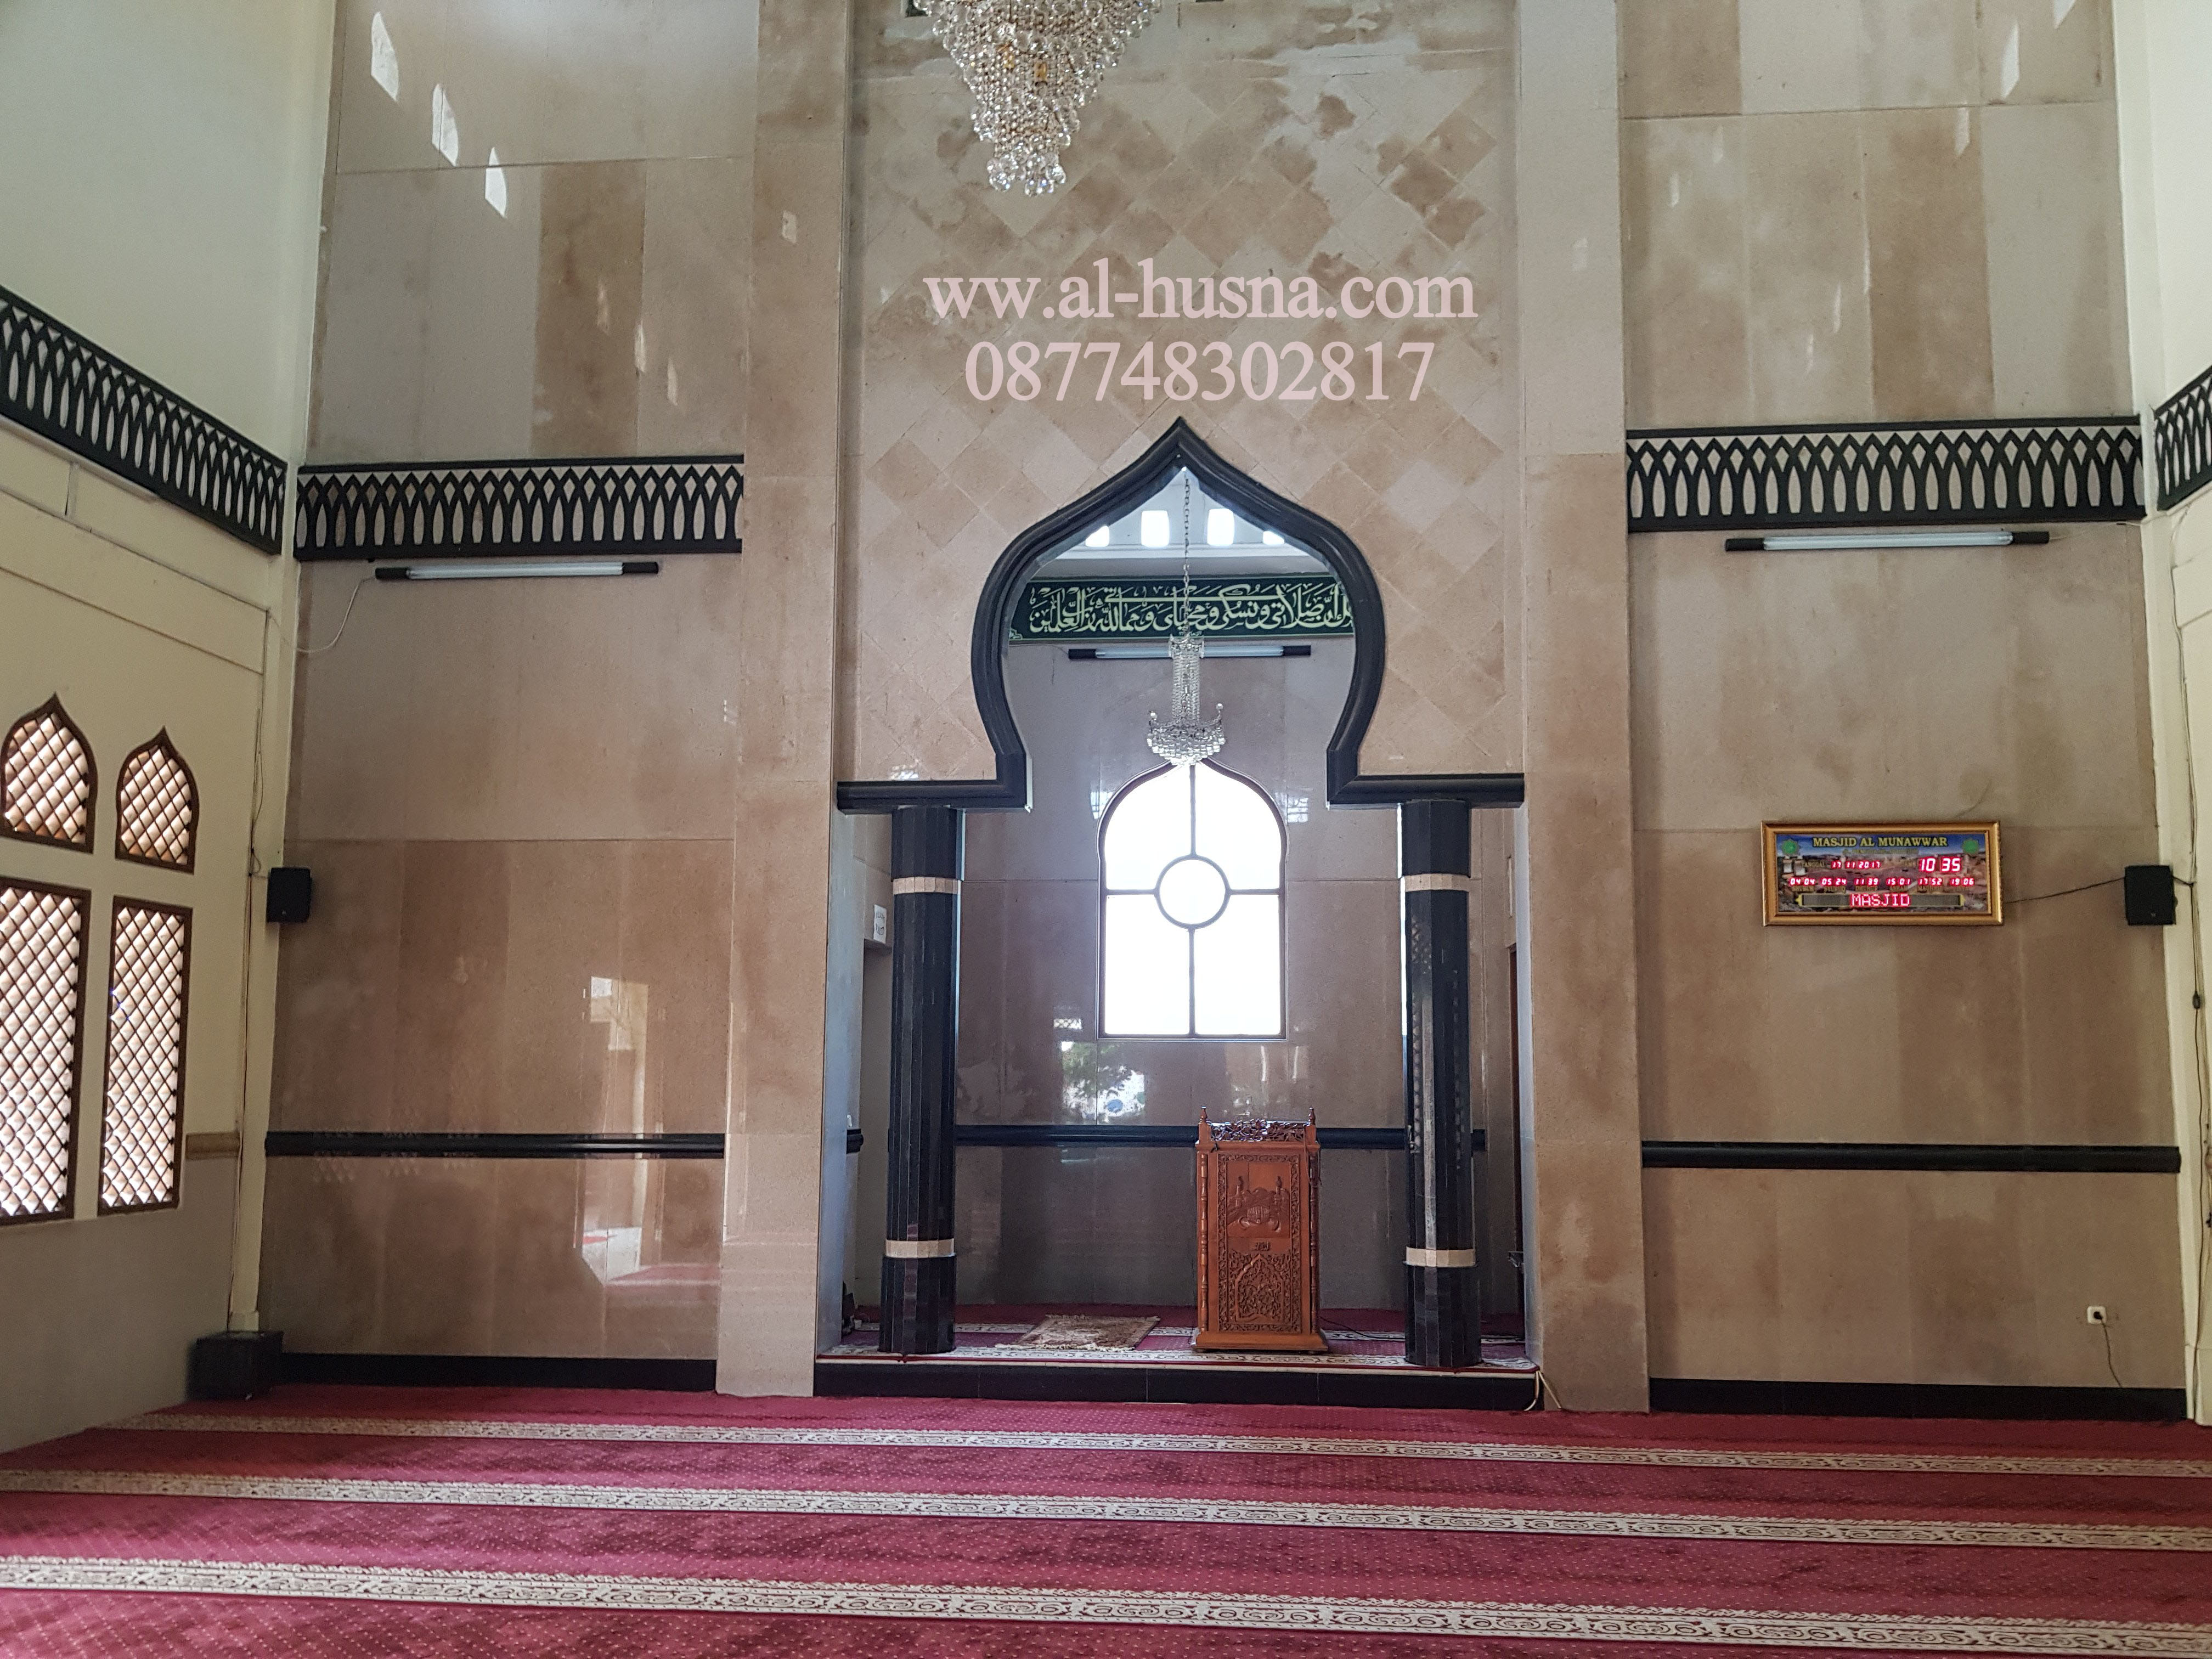 Daftar Harga Karpet Masjid Di Sirnajaya Bekasi 